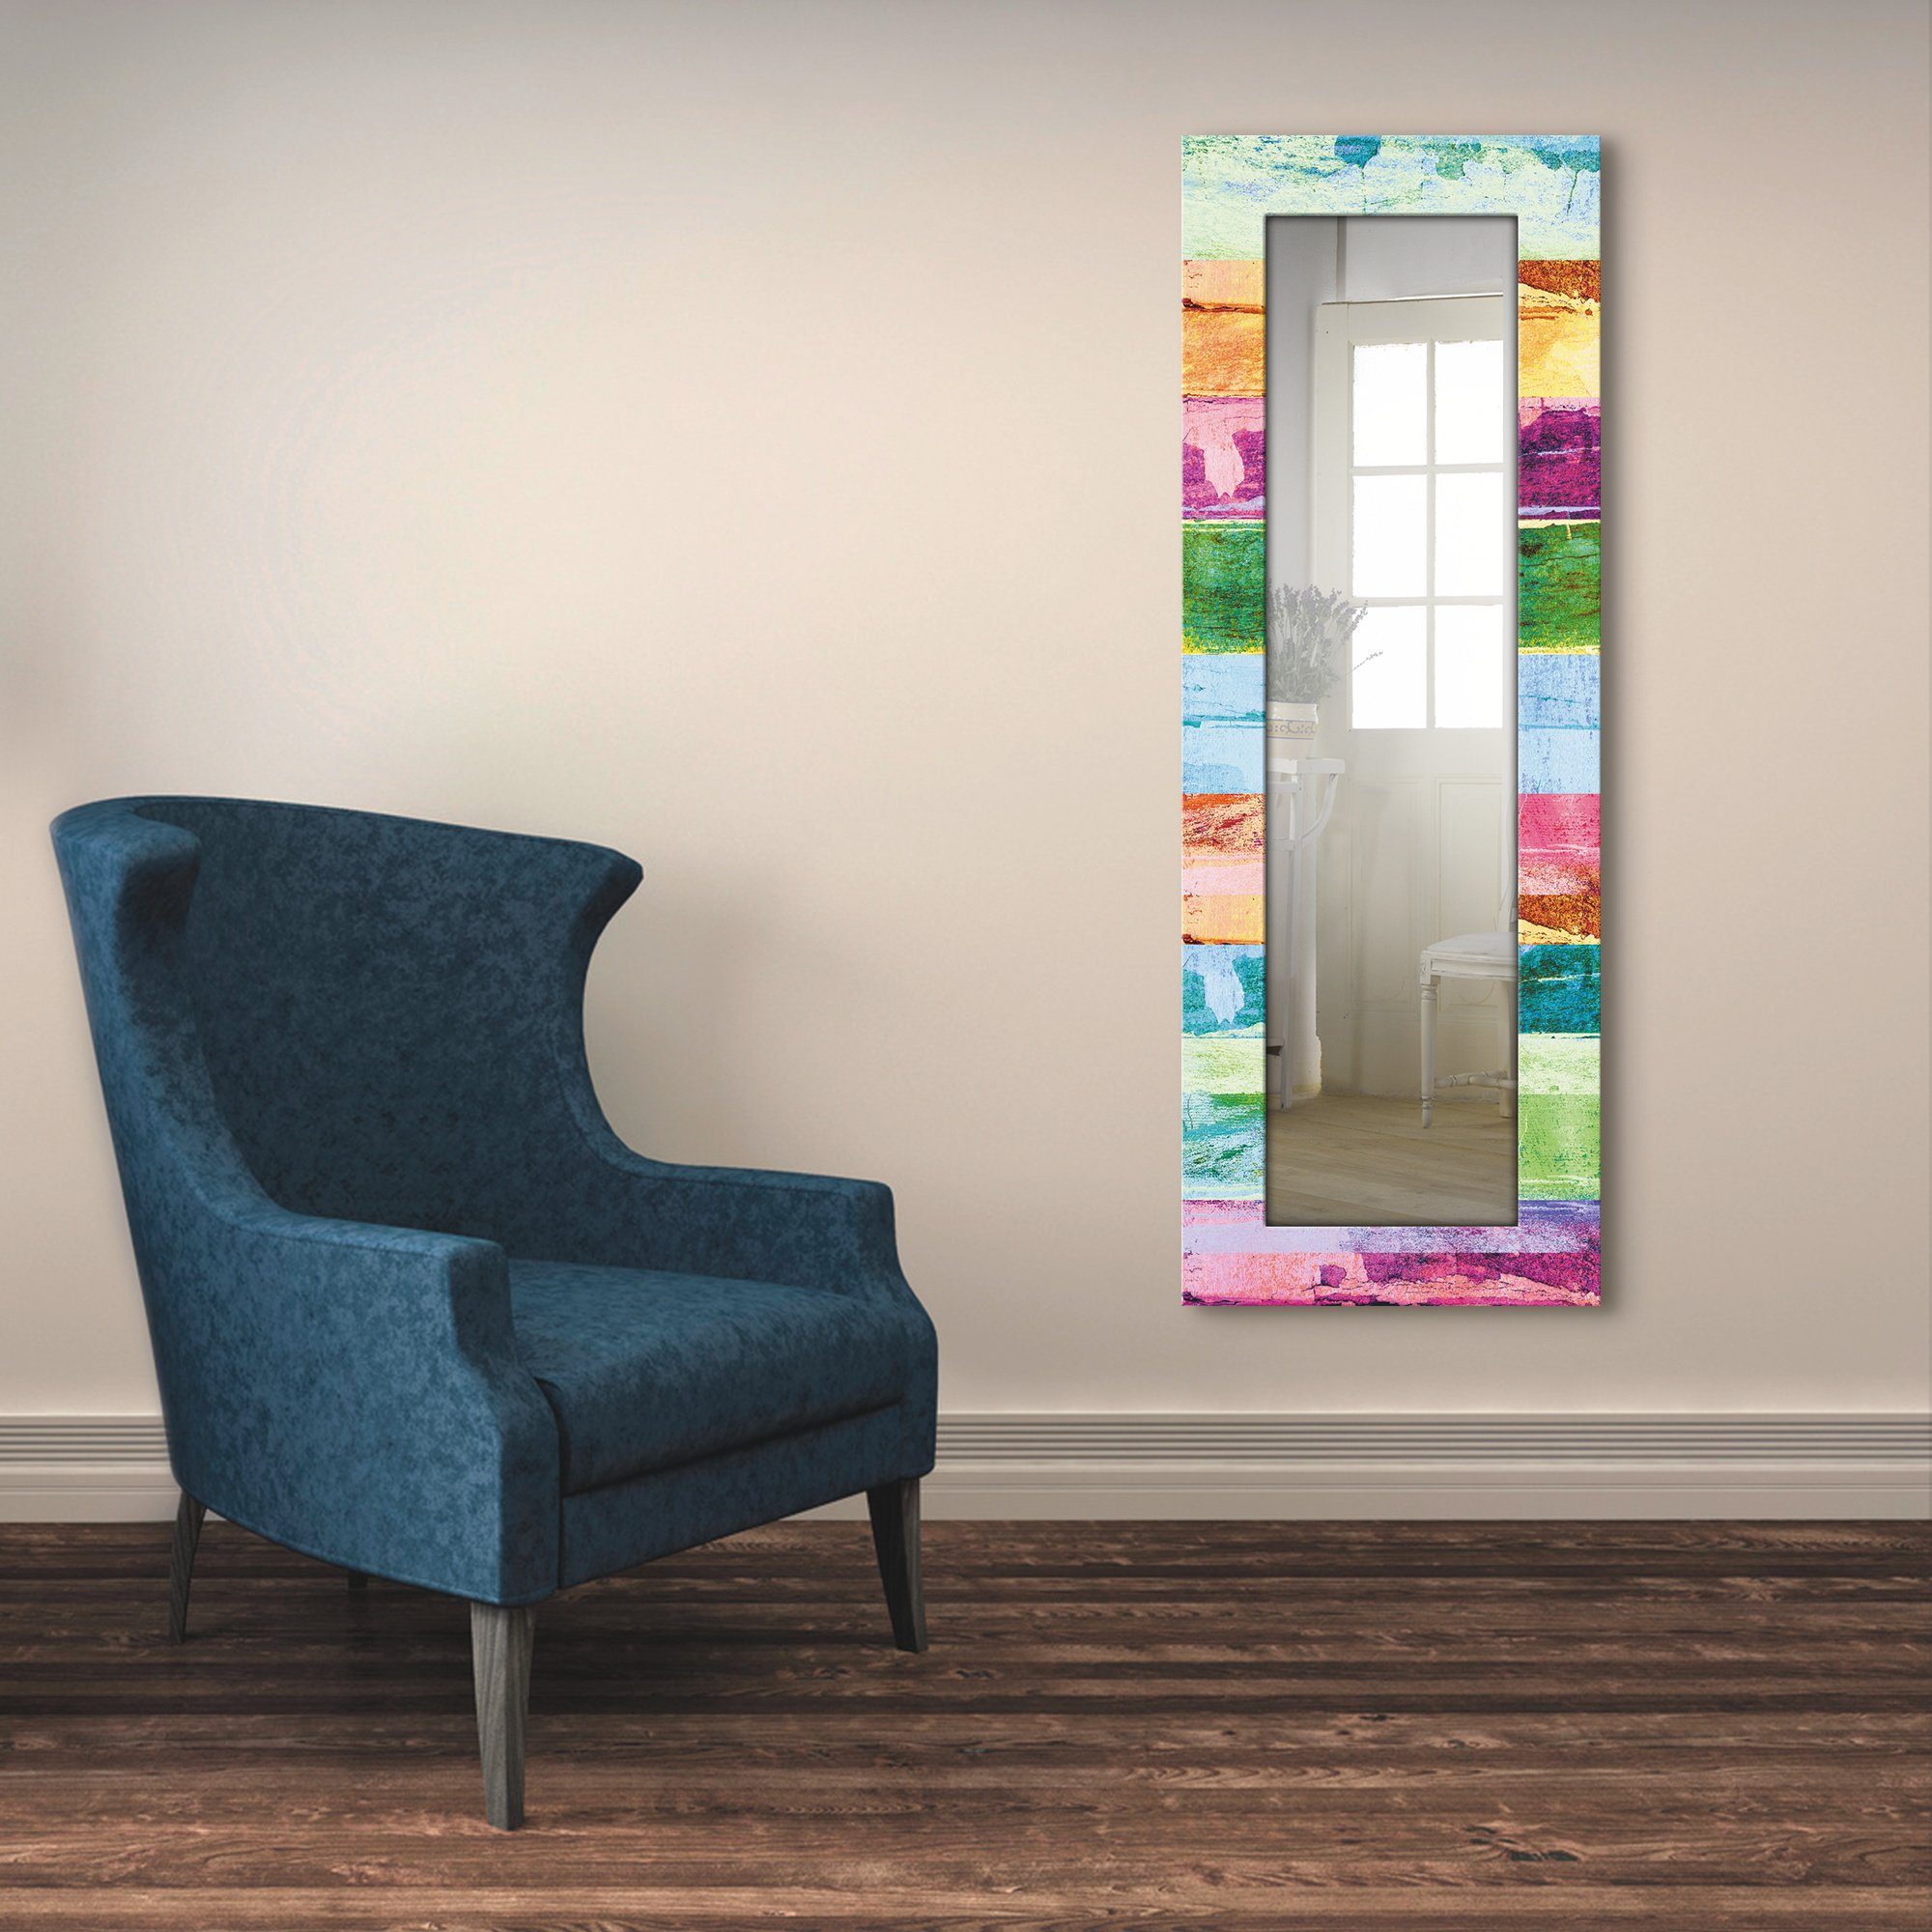 Artland Sierspiegel Gekleurde houten achtergrond ingelijste spiegel voor het hele lichaam met motiefrand, geschikt voor kleine, smalle hal, halspiegel, mirror spiegel omrand om op